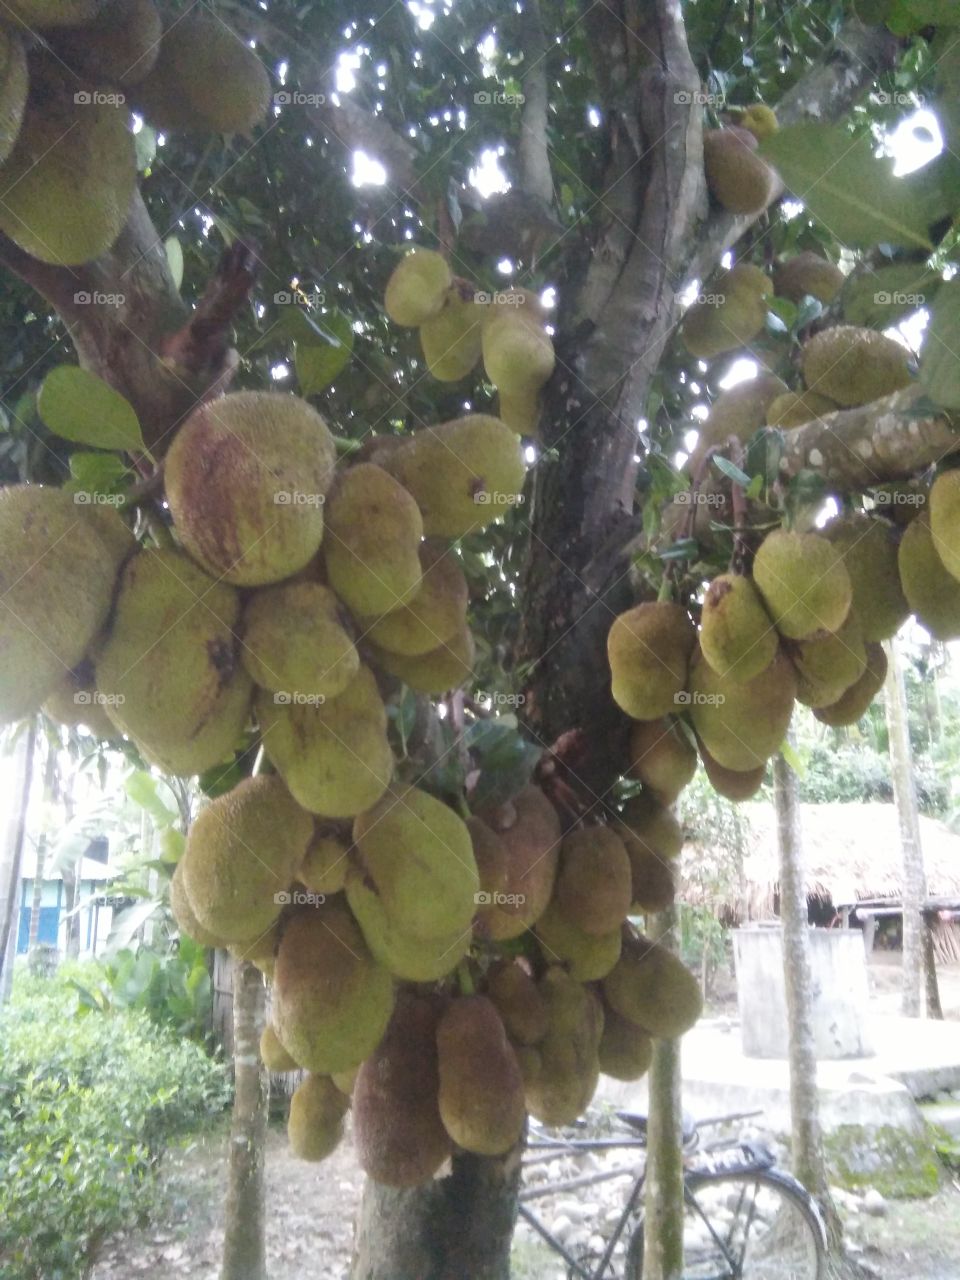 A view of summer fruits,Jackfruit